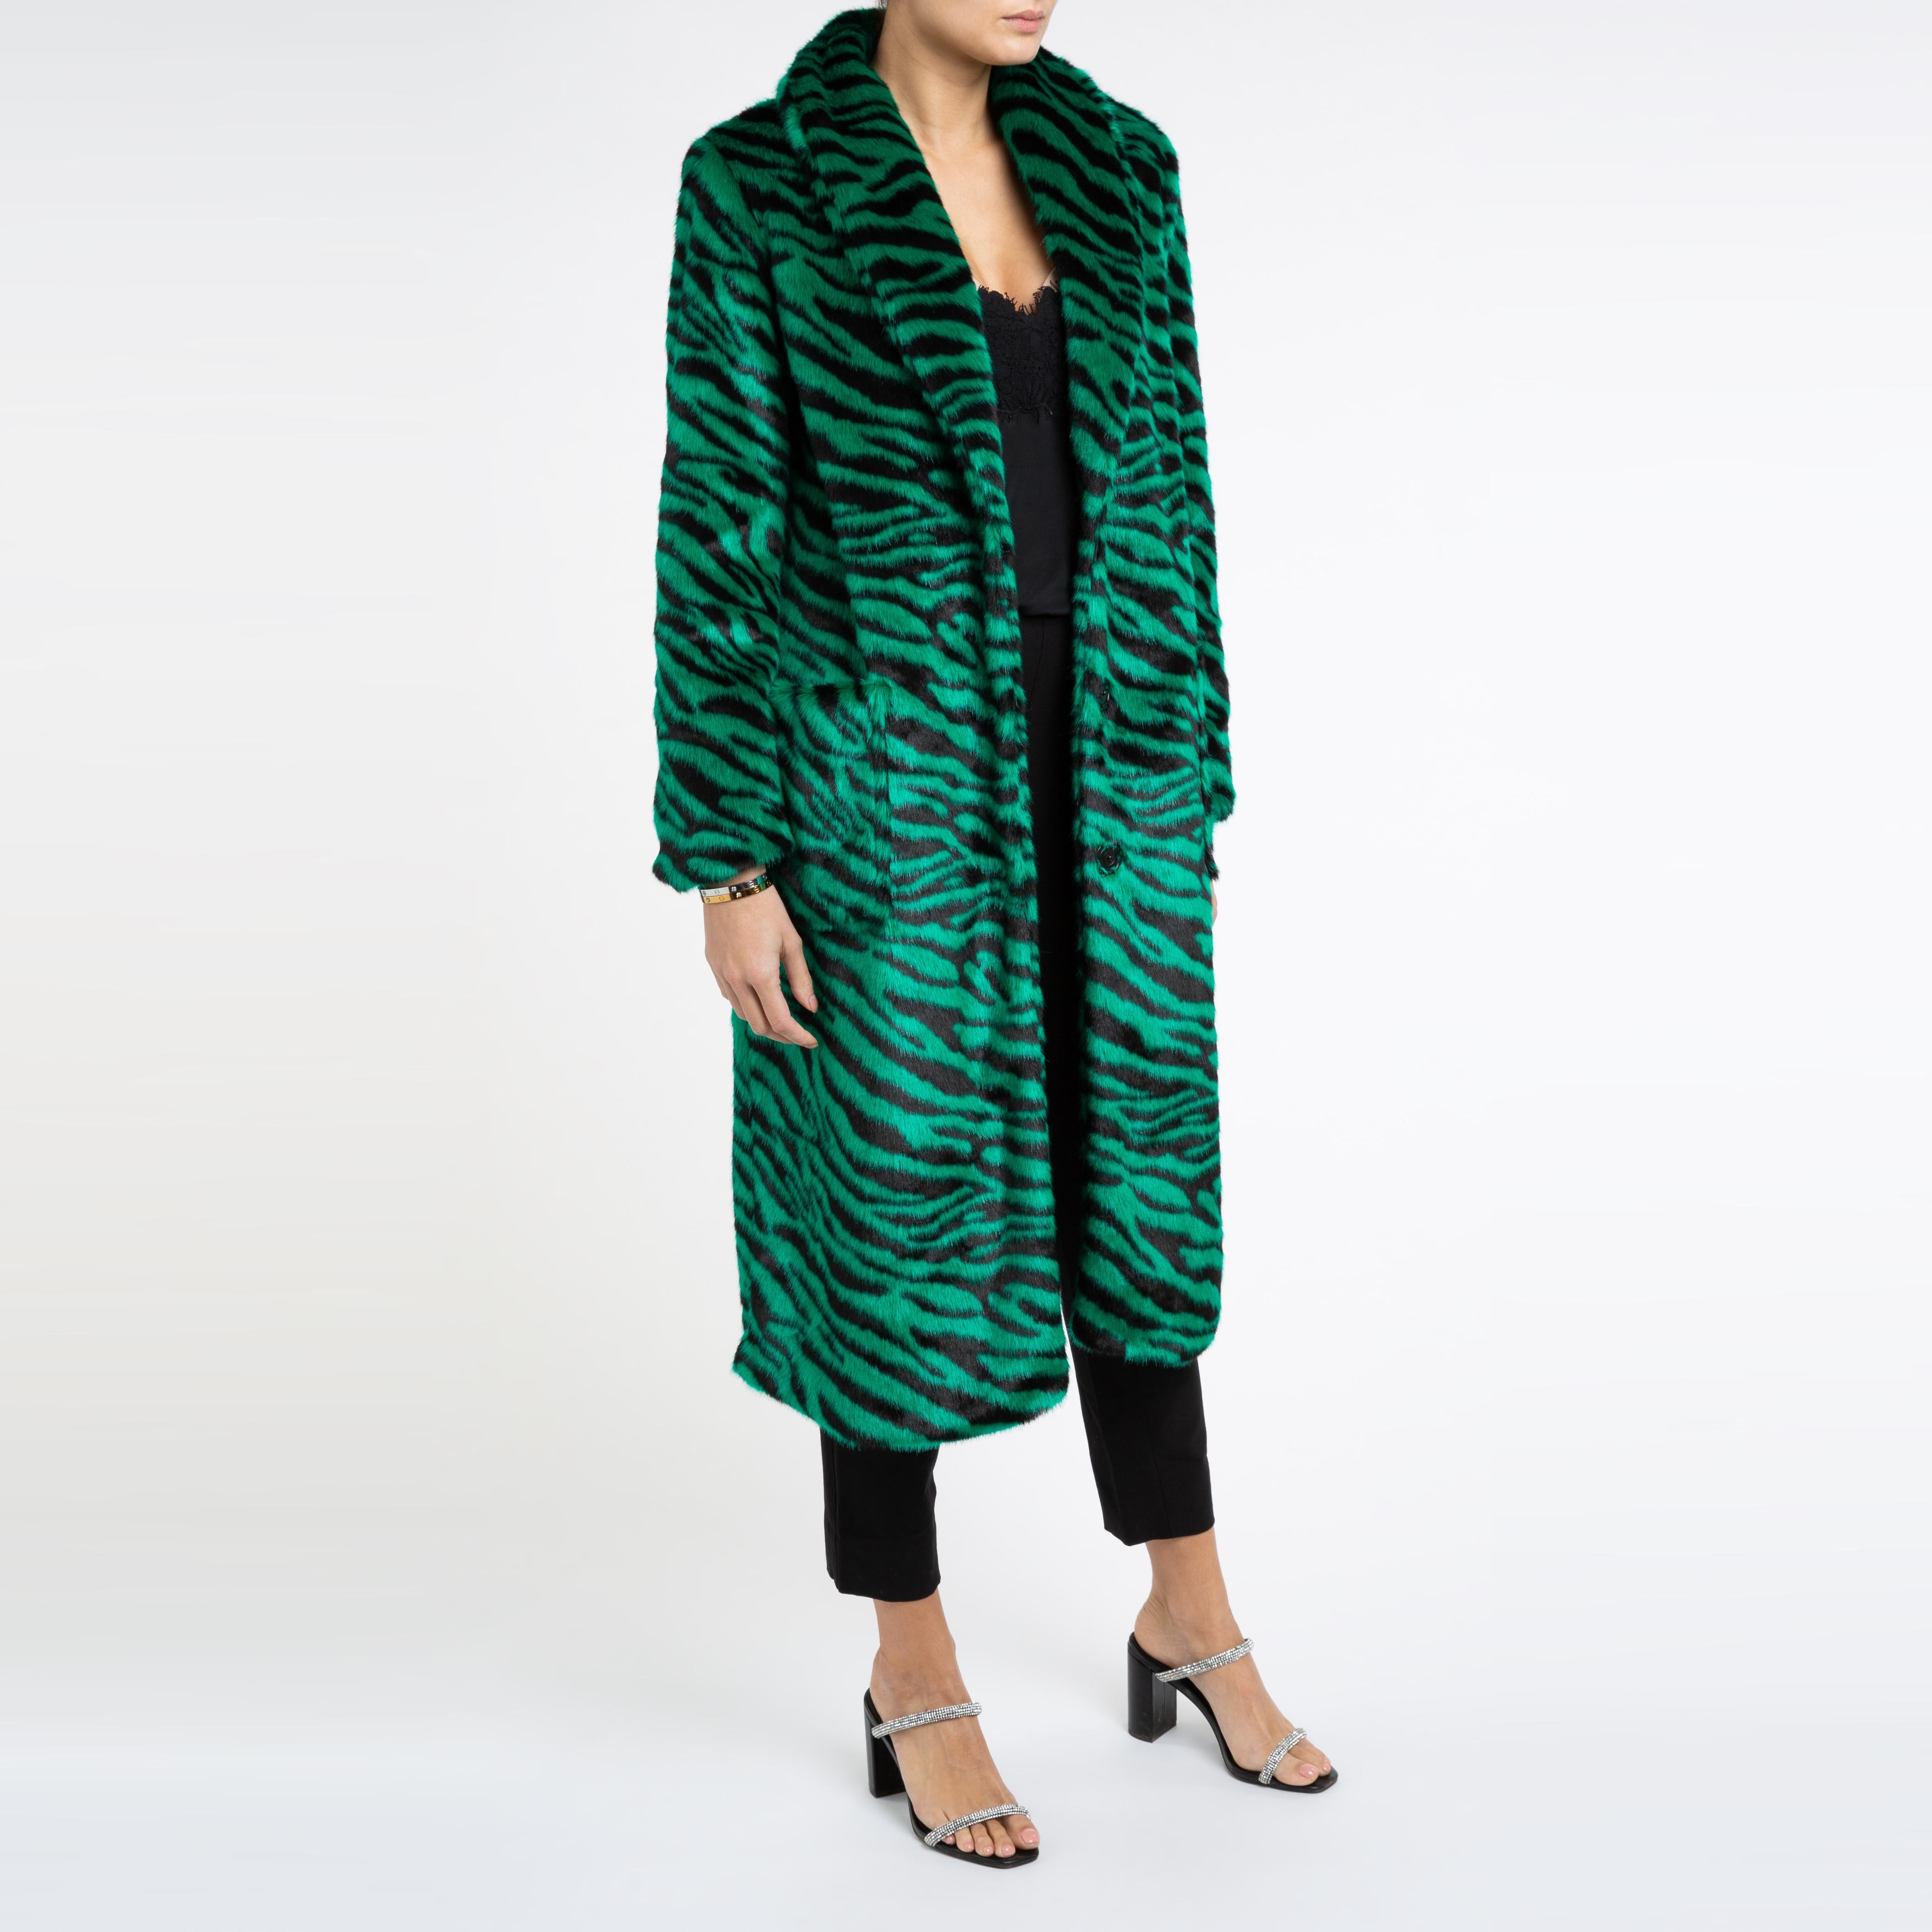 Esmeralda Kunstpelz-Mantel in Smaragdgrün mit Zebra-Druck, Größe uk 8, London Damen im Angebot